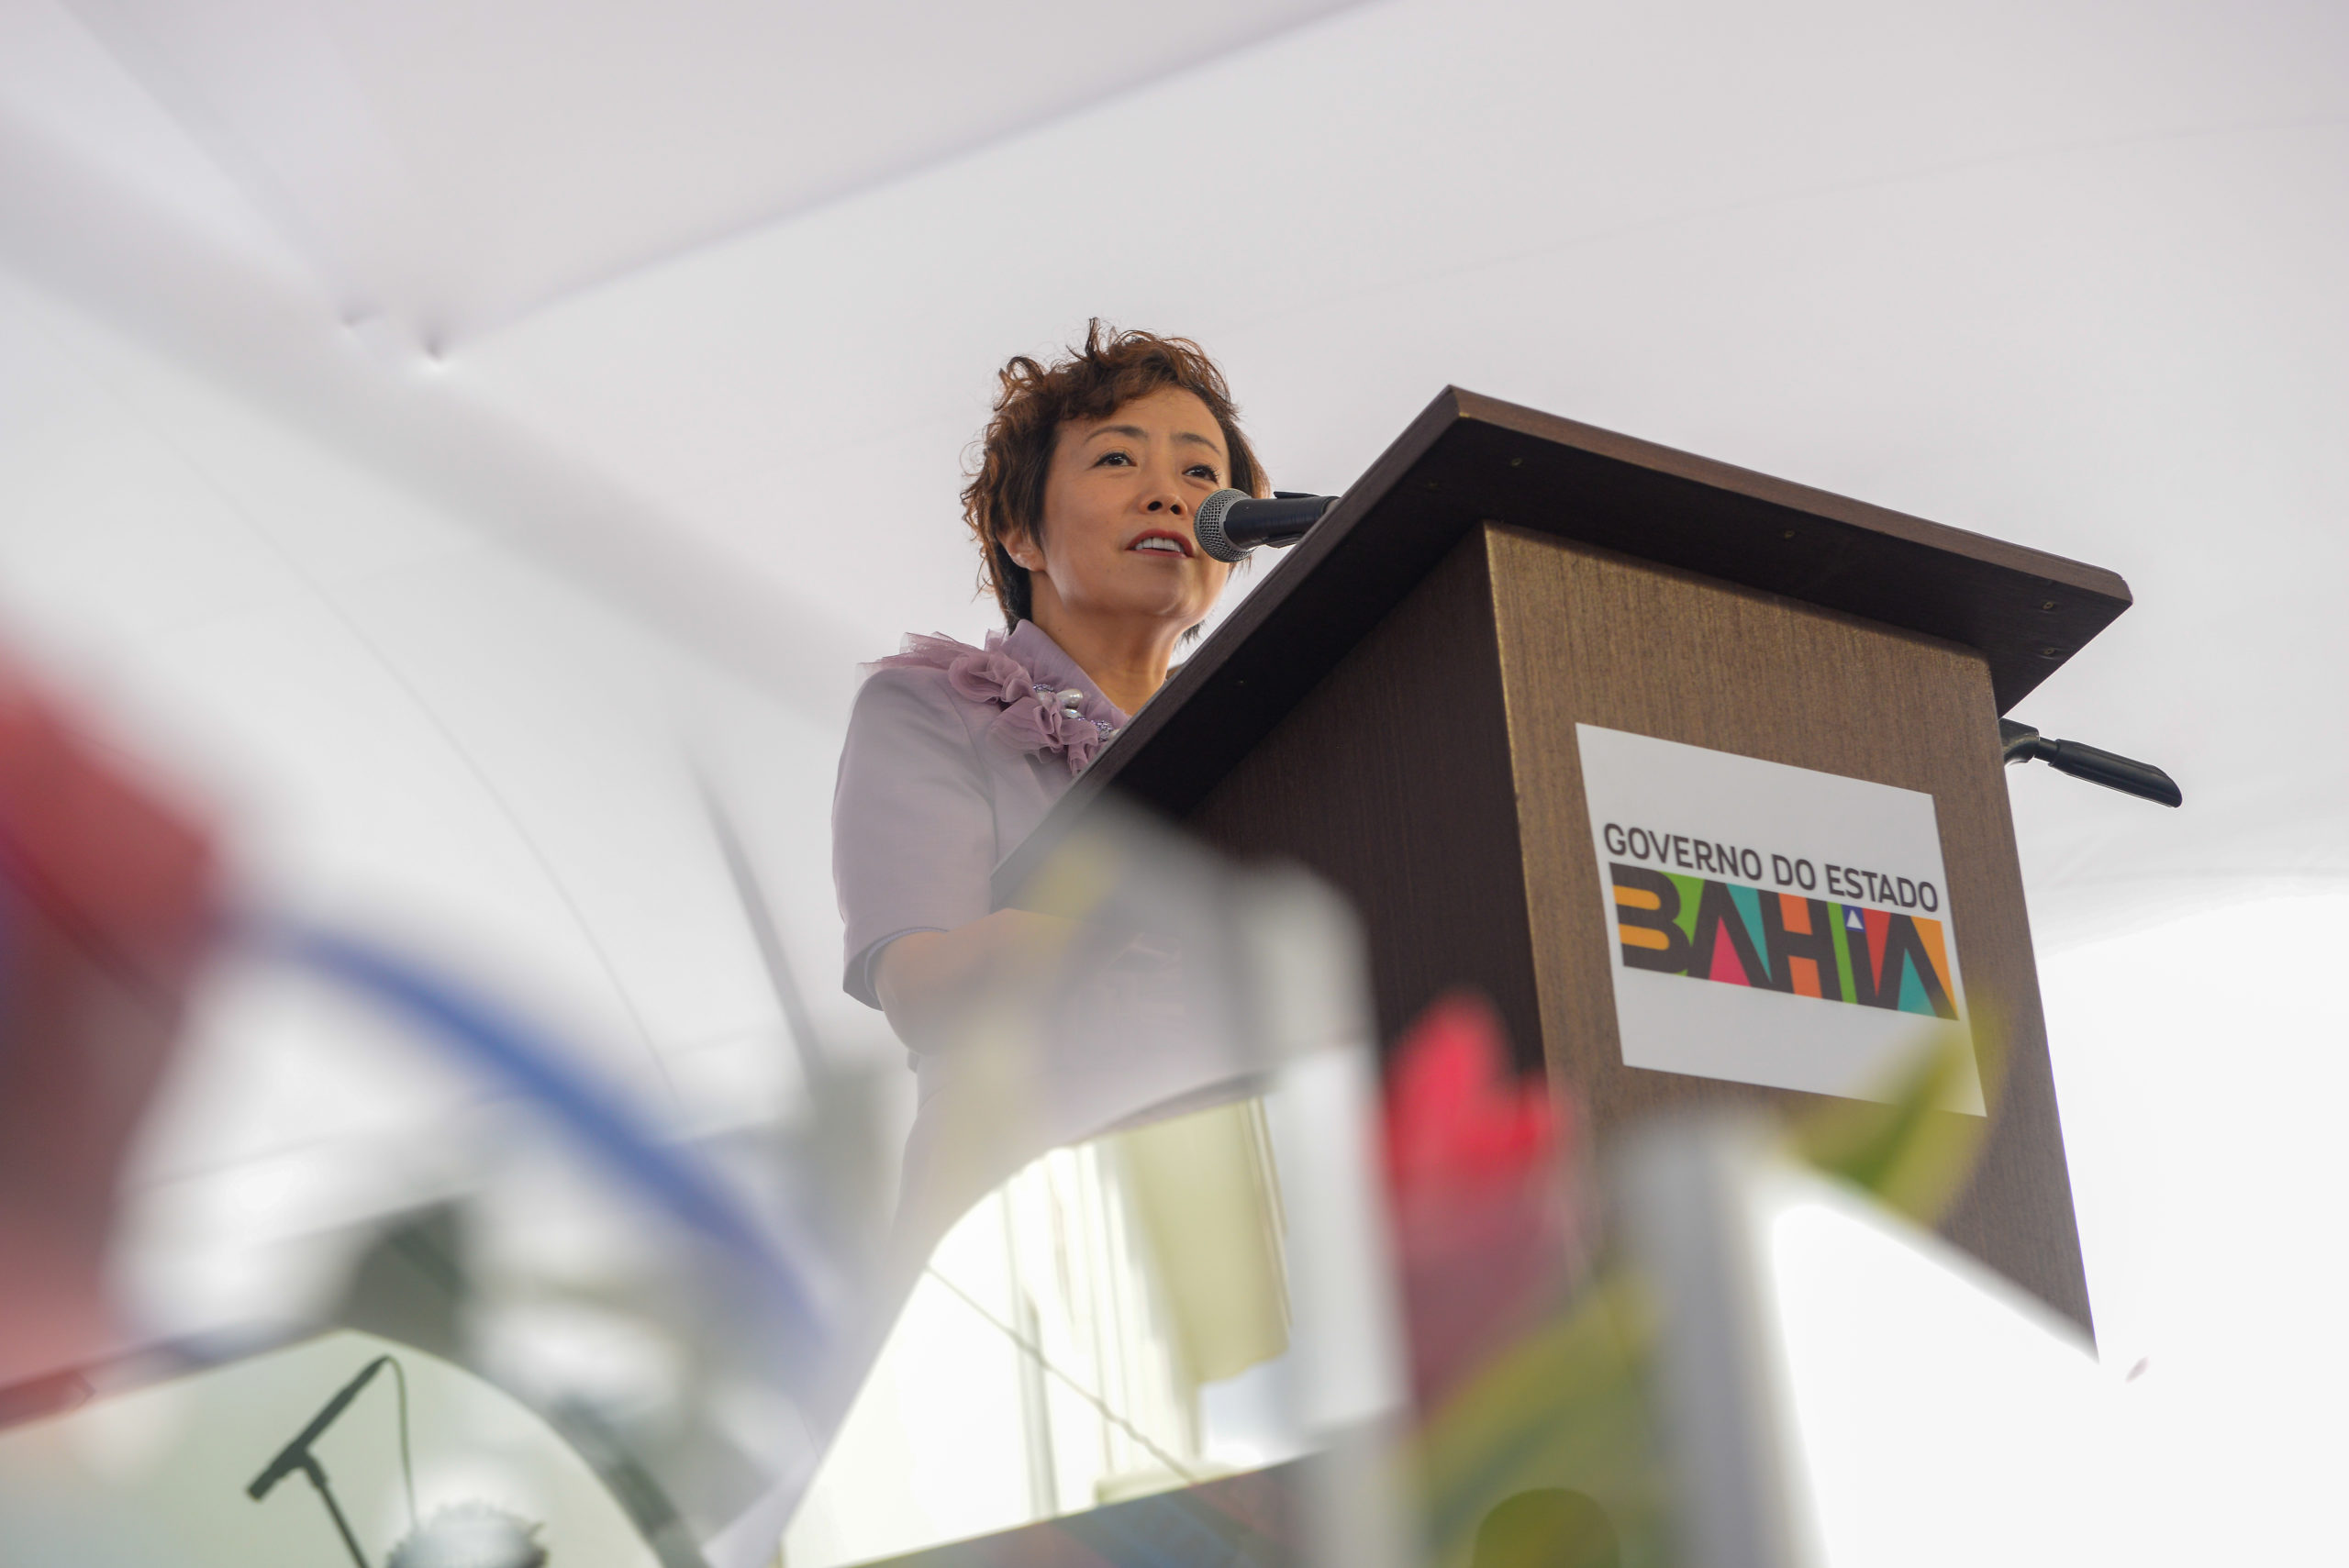 BYD investirá R$ 3 bilhões em fábricas para produção de veículos elétricos na Bahia. Na imagem: Stella Li, CEO da BYD Américas, participa de cerimônia de lançamento do complexo fabril de eletromobilidade da BYD em Camaçari, na Bahia (Foto: Divulgação)